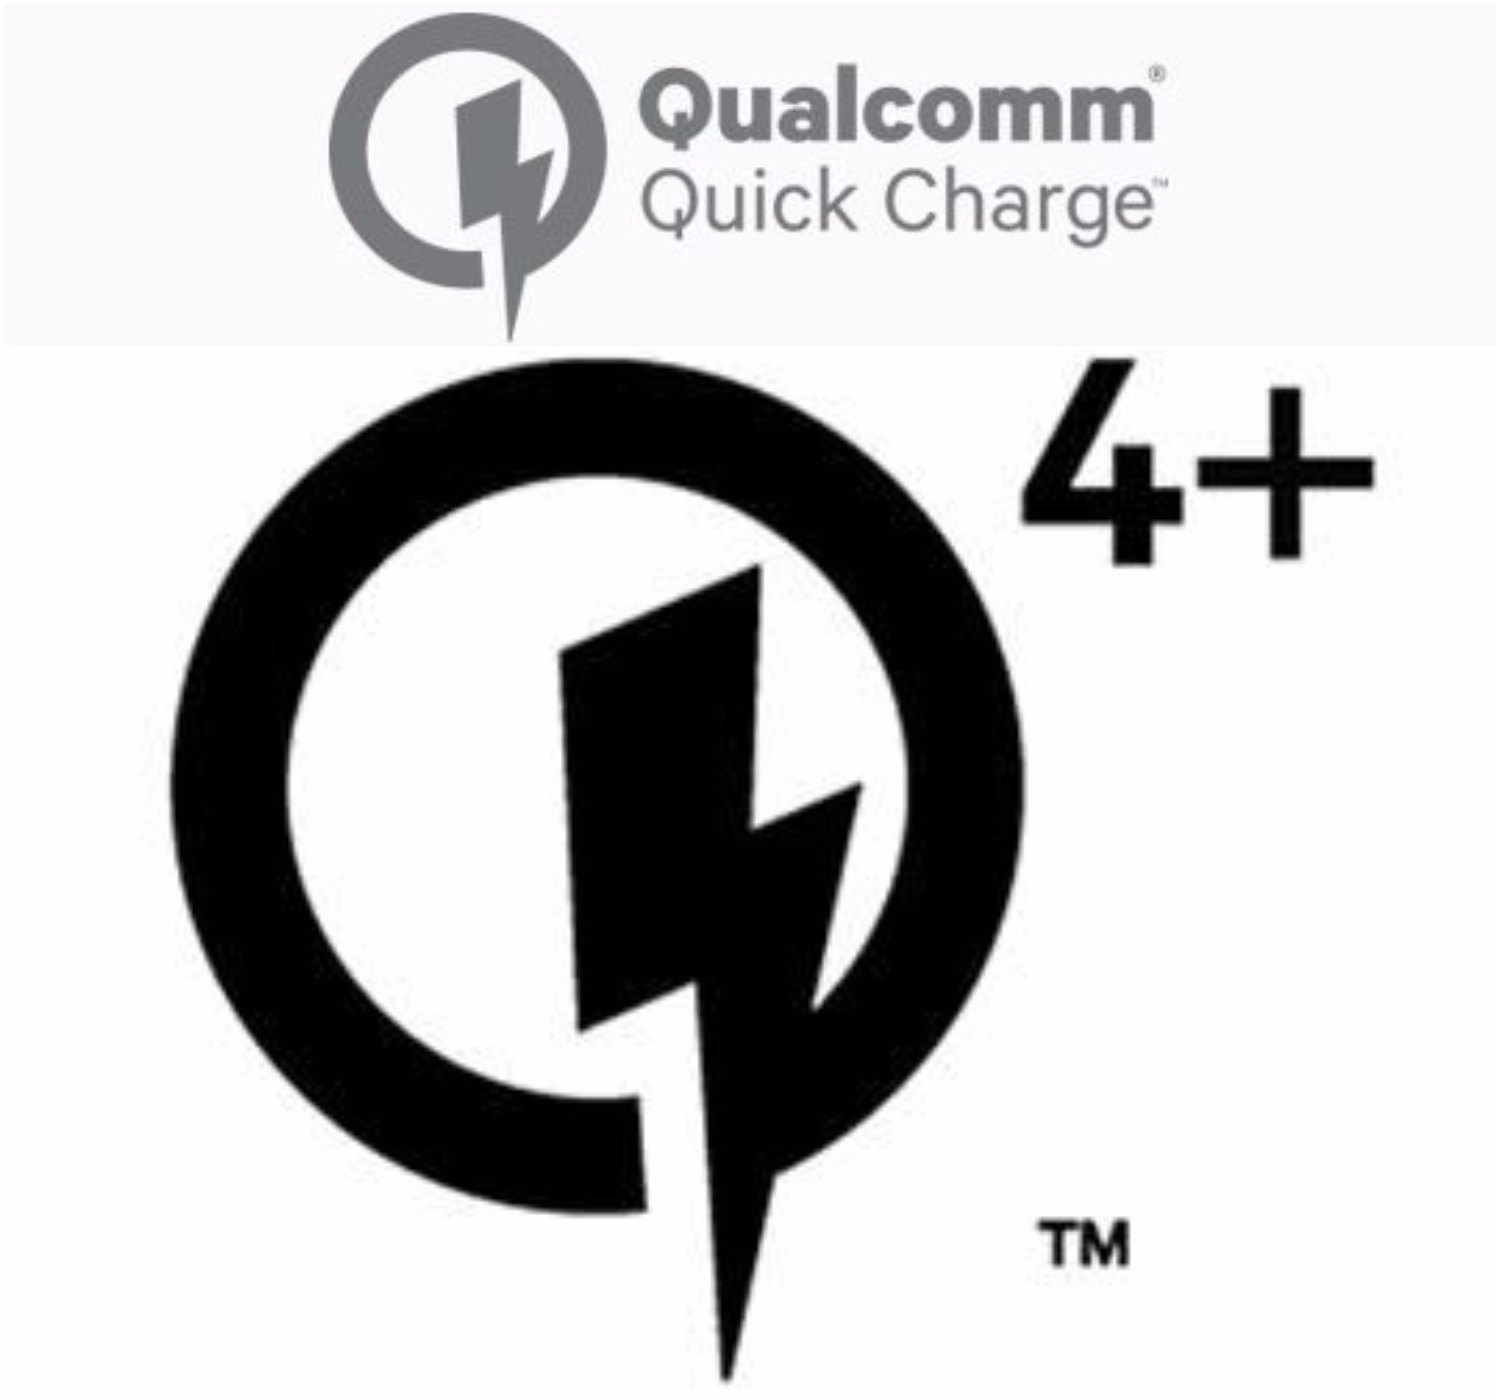 Qualcomm Quick Charge 4+ gestartet: Was ist neu darin?